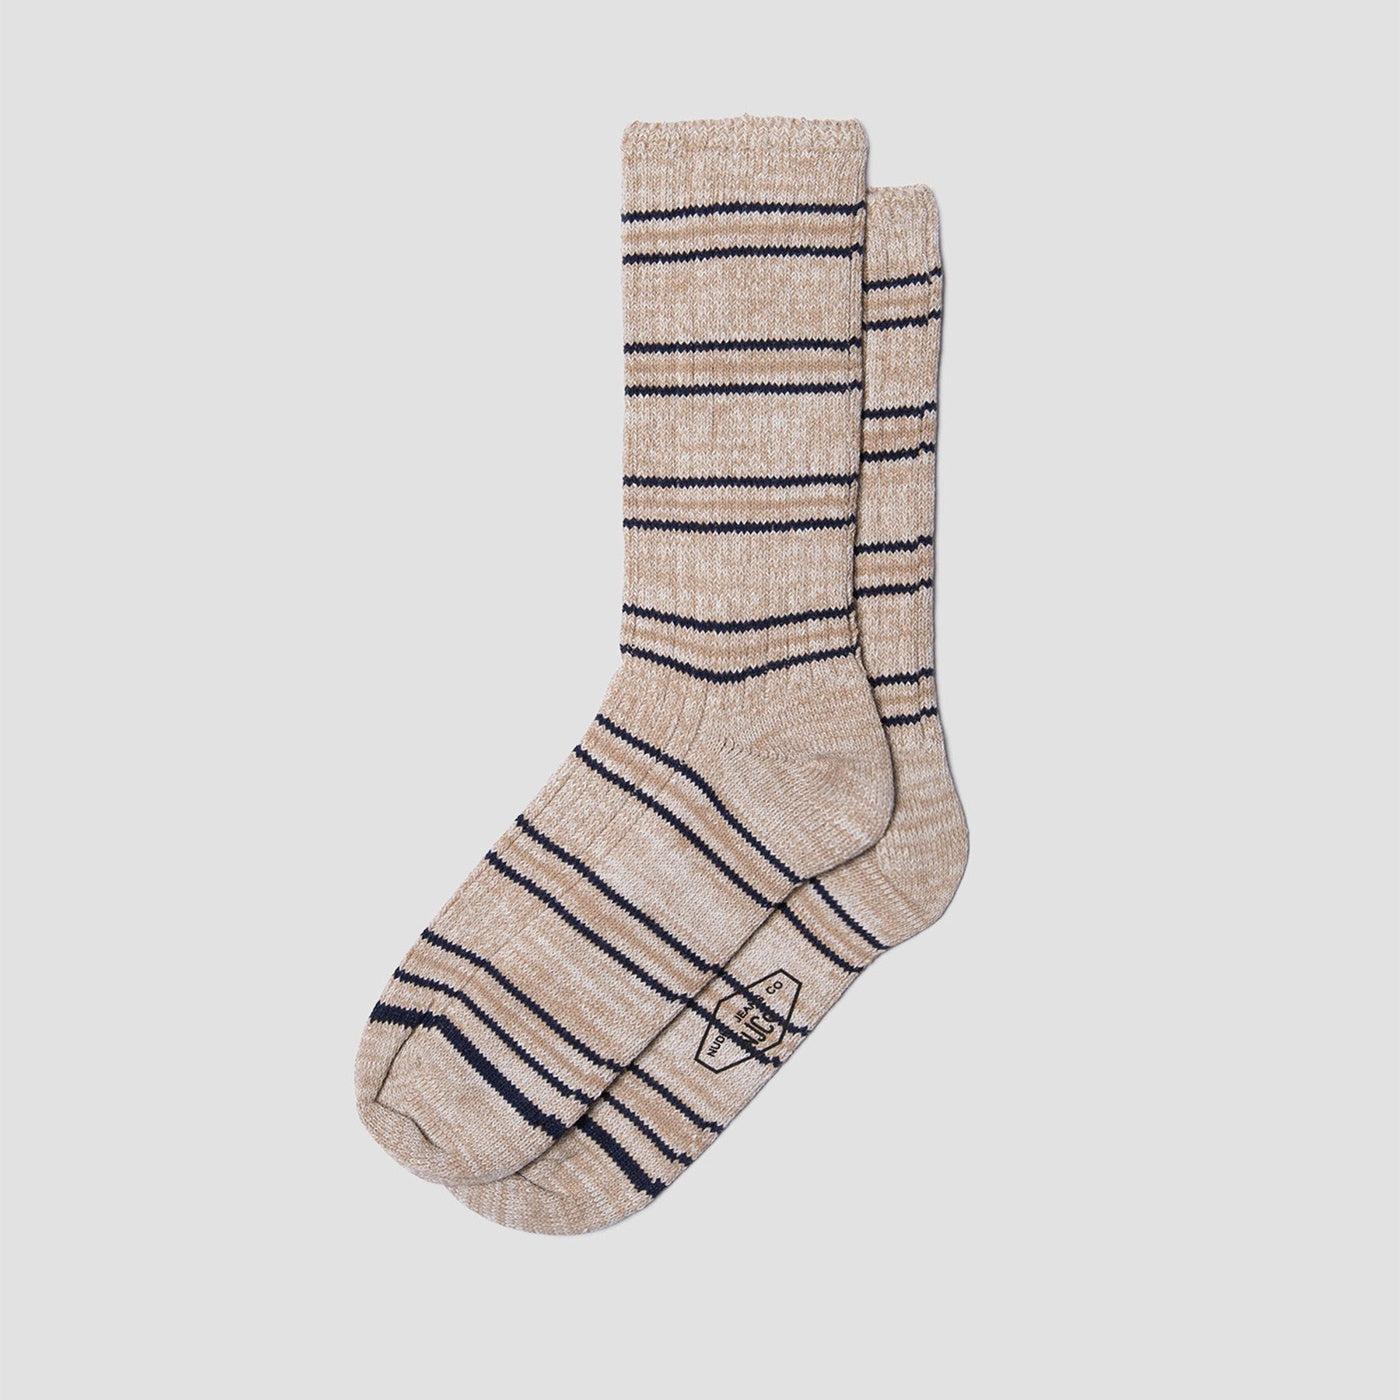 Nudie - Mens Chunky Socks - Prairie Stripe